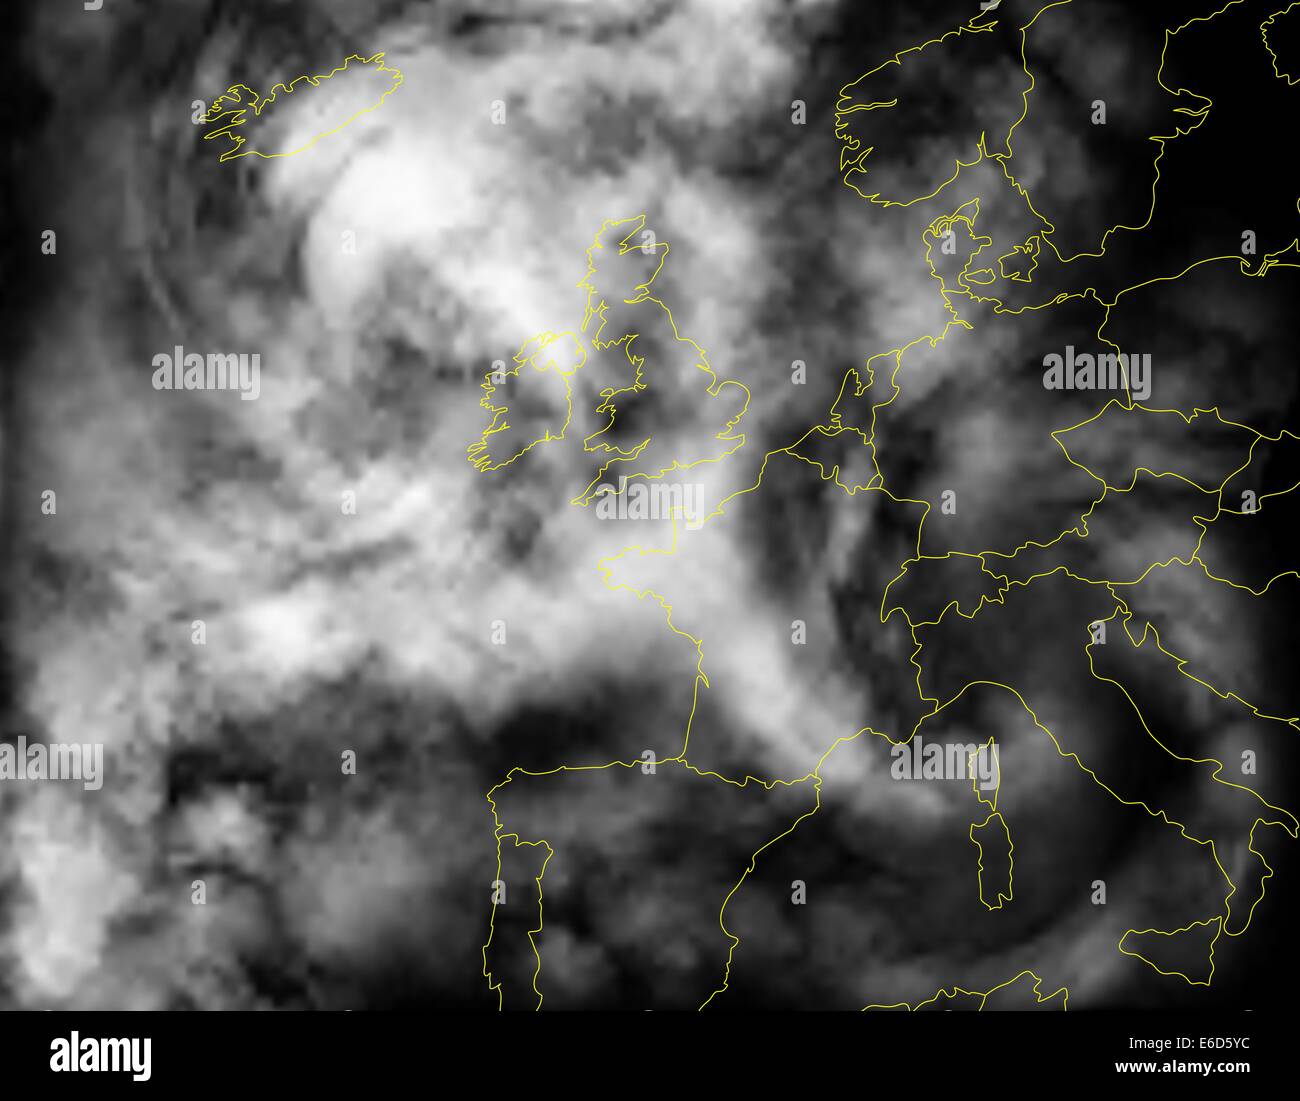 Modificabile illustrazione vettoriale di un'immagine satellitare di copertura nuvolosa su Europa fatta usando un gradiente mesh di rendering del cloud Illustrazione Vettoriale